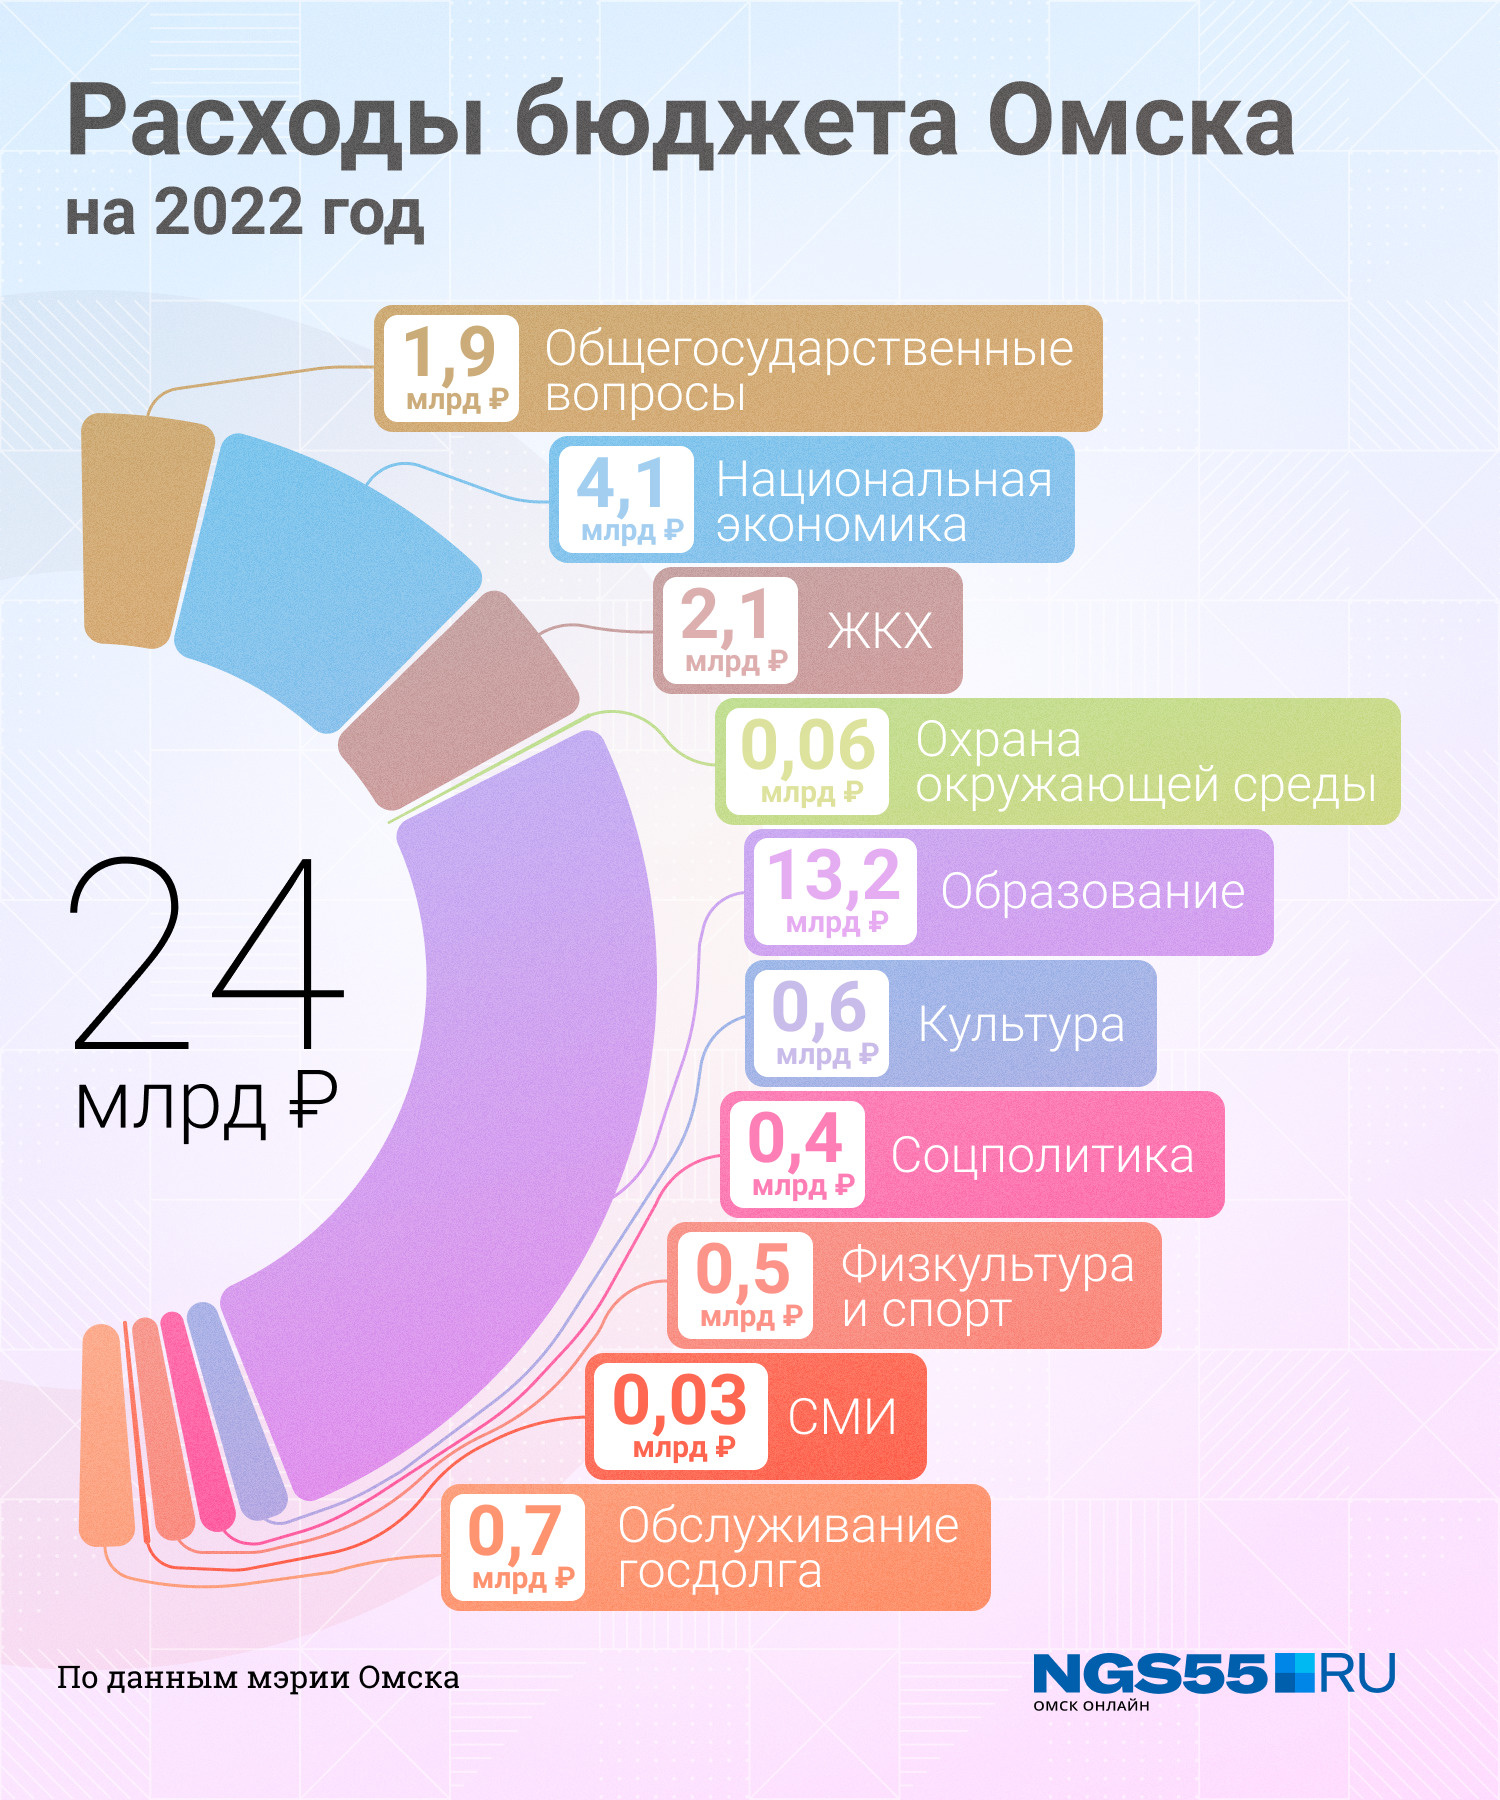 Какая информация в россии в 2022. Бюджет России на 2022 год. Федеральный бюджет на 2022 год инфографика. Бюджет России на 2022 инфографика. Распределение бюджета России на 2022.